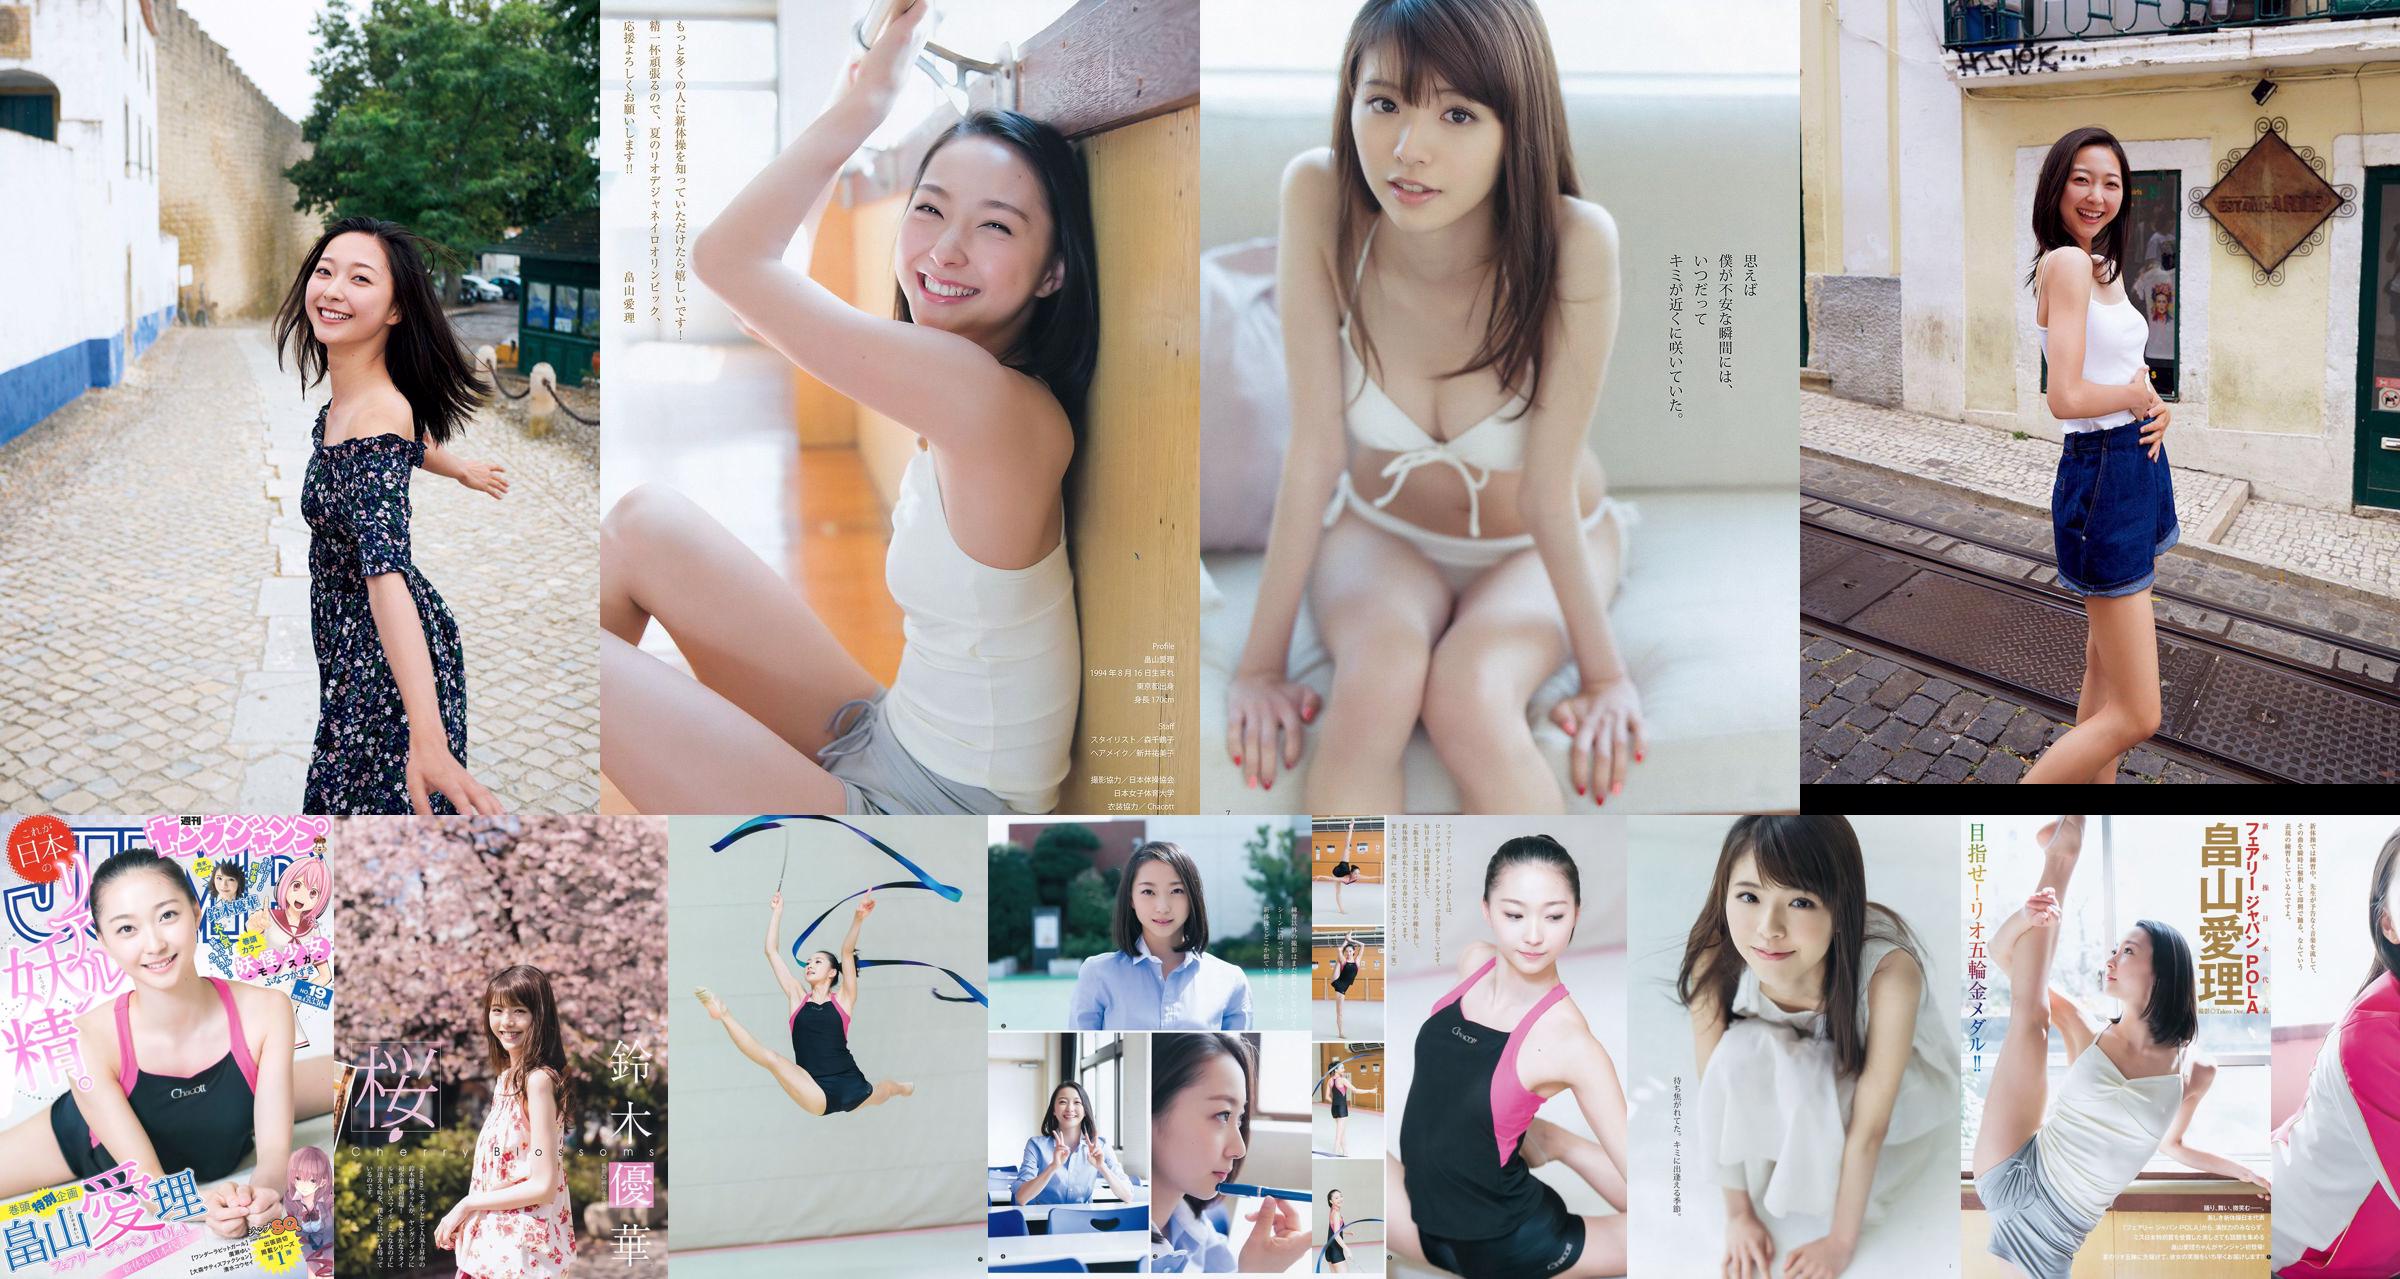 [ENTAME] Mai Shiraishi Nanase Nishino Rena Shimada Yui Takano Fotografia numero marzo 2014 No.d02133 Pagina 2